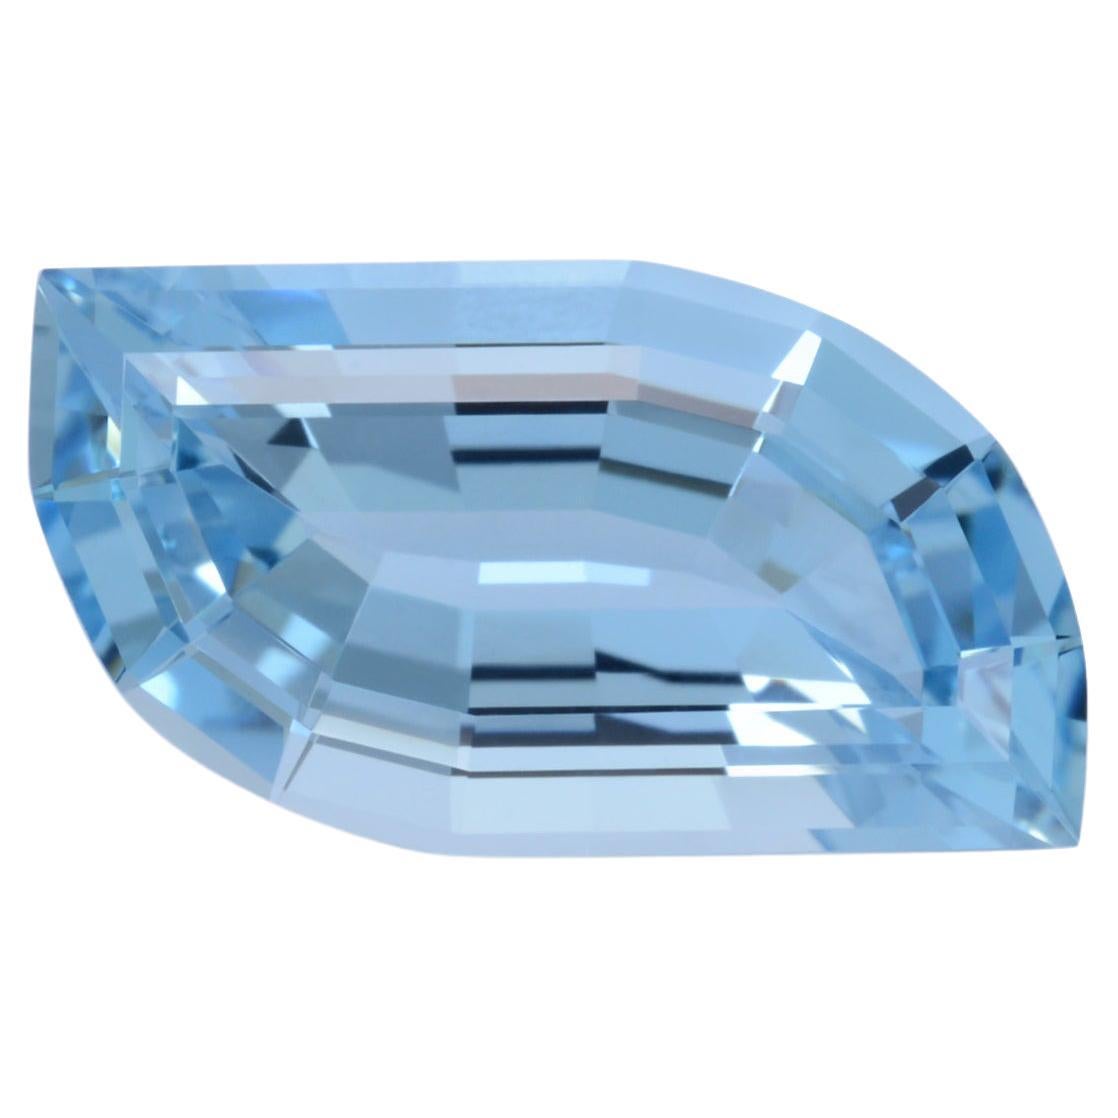 Aquamarine Ring Gem 5.35 Carat Leaf Shape Loose Gemstone